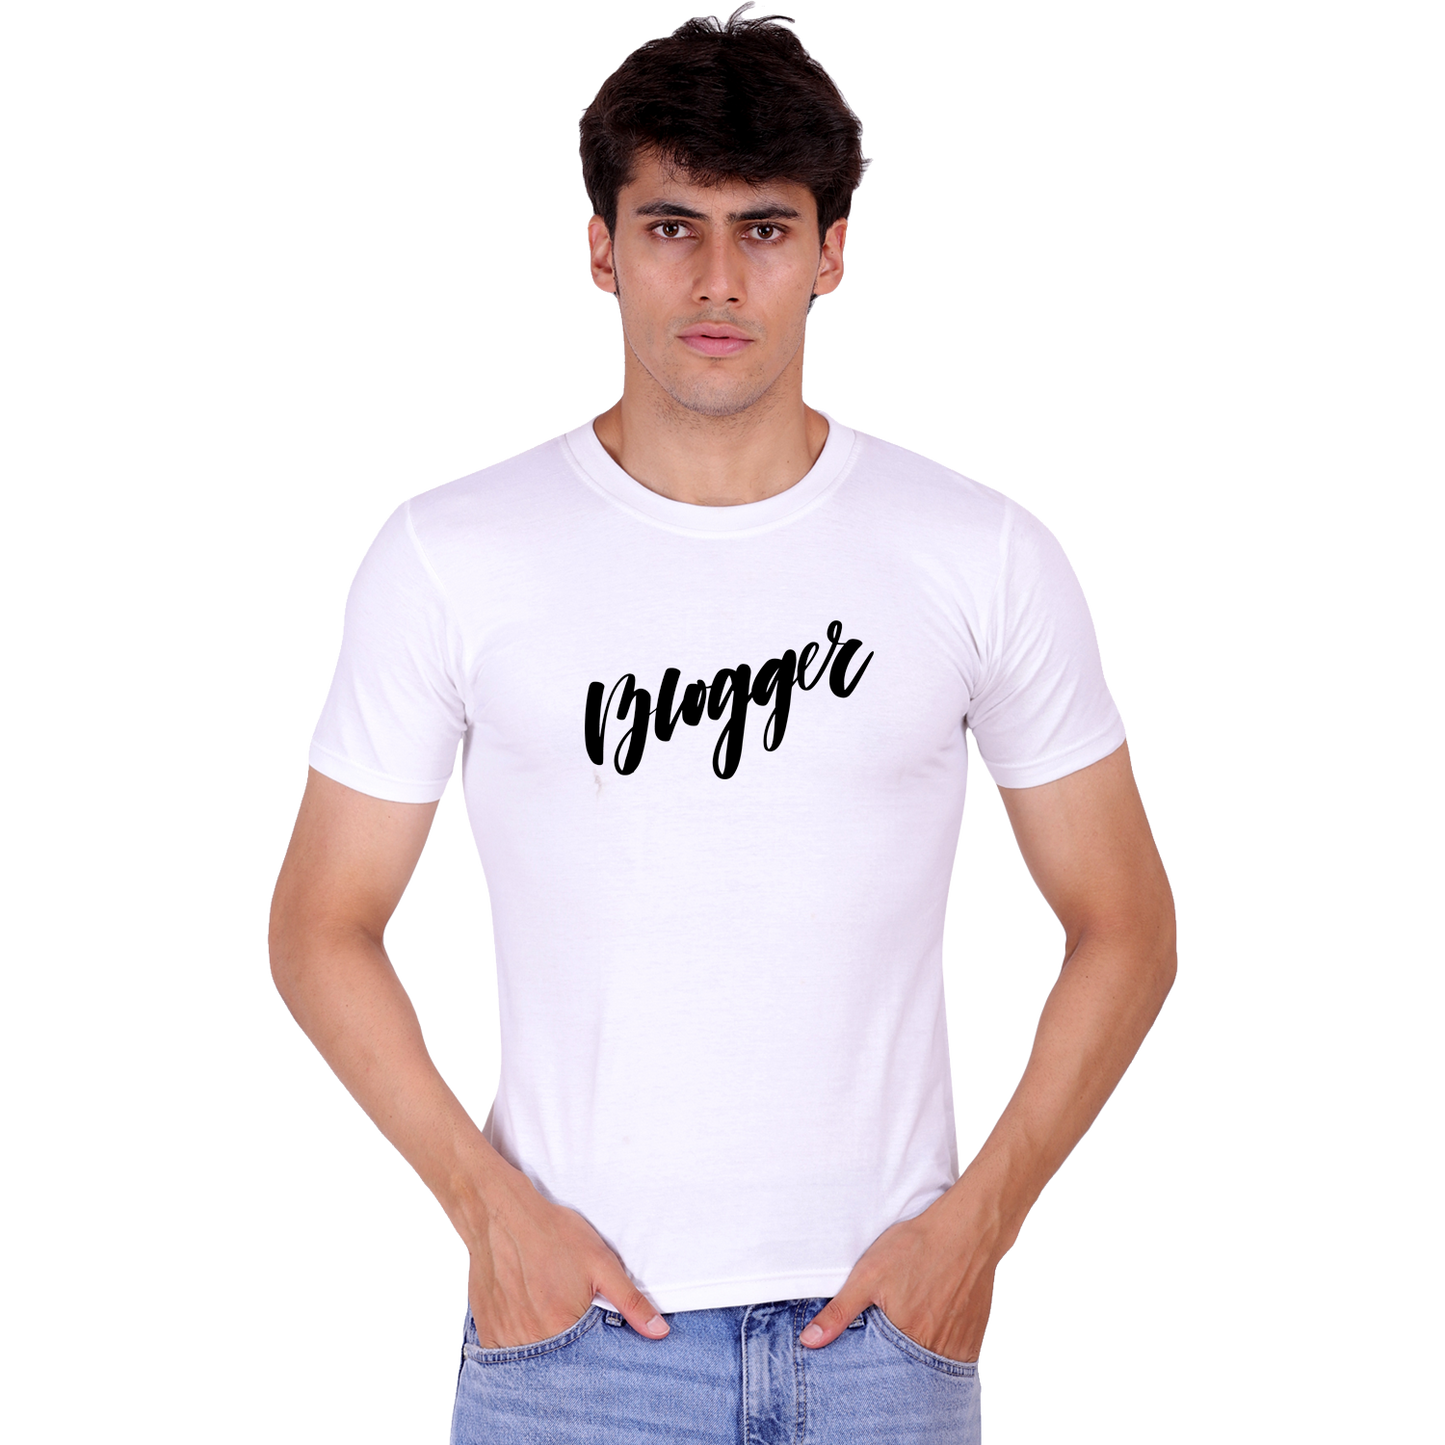 Blogger cotton T-shirt | T089